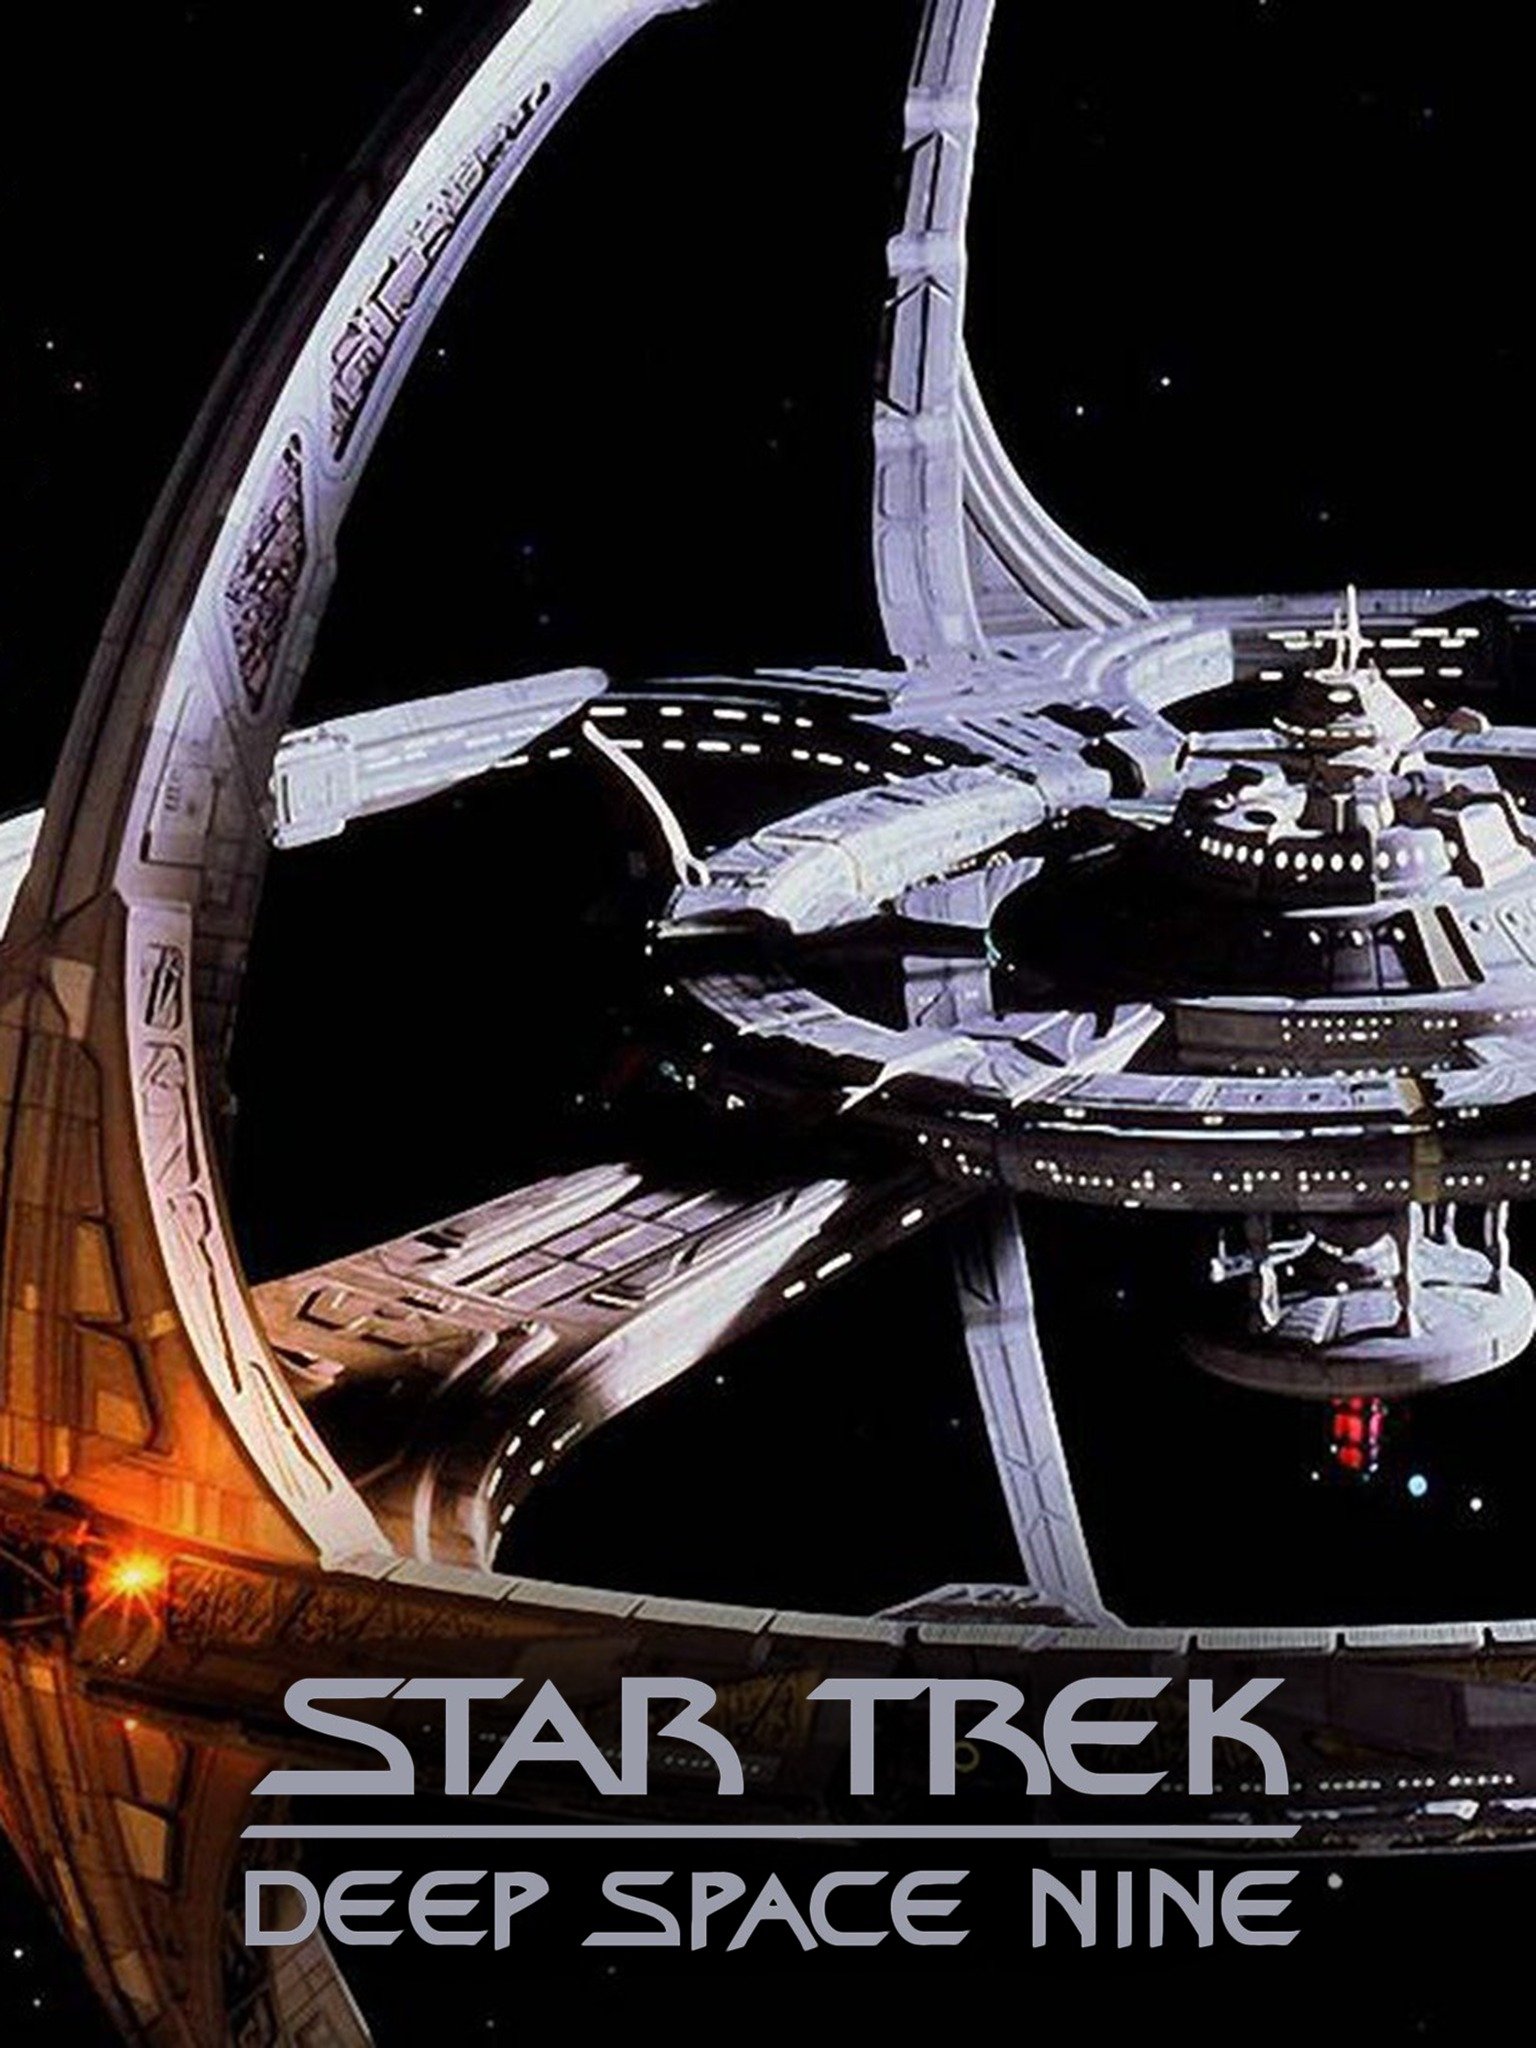 Star Trek: Deep Space Nine - tên tuổi quen thuộc trong giới yêu thích phim khoa học viễn tưởng! Nếu bạn là một fan của loạt phim này, không thể bỏ qua bức ảnh đầy cảm hứng về Deep Space Nine. Đủ sức lôi cuốn bạn vào một thế giới hoàn toàn mới, với những chuyến phiêu lưu đầy kịch tính. Bấm vào để cùng khám phá và tận hưởng nhé! 